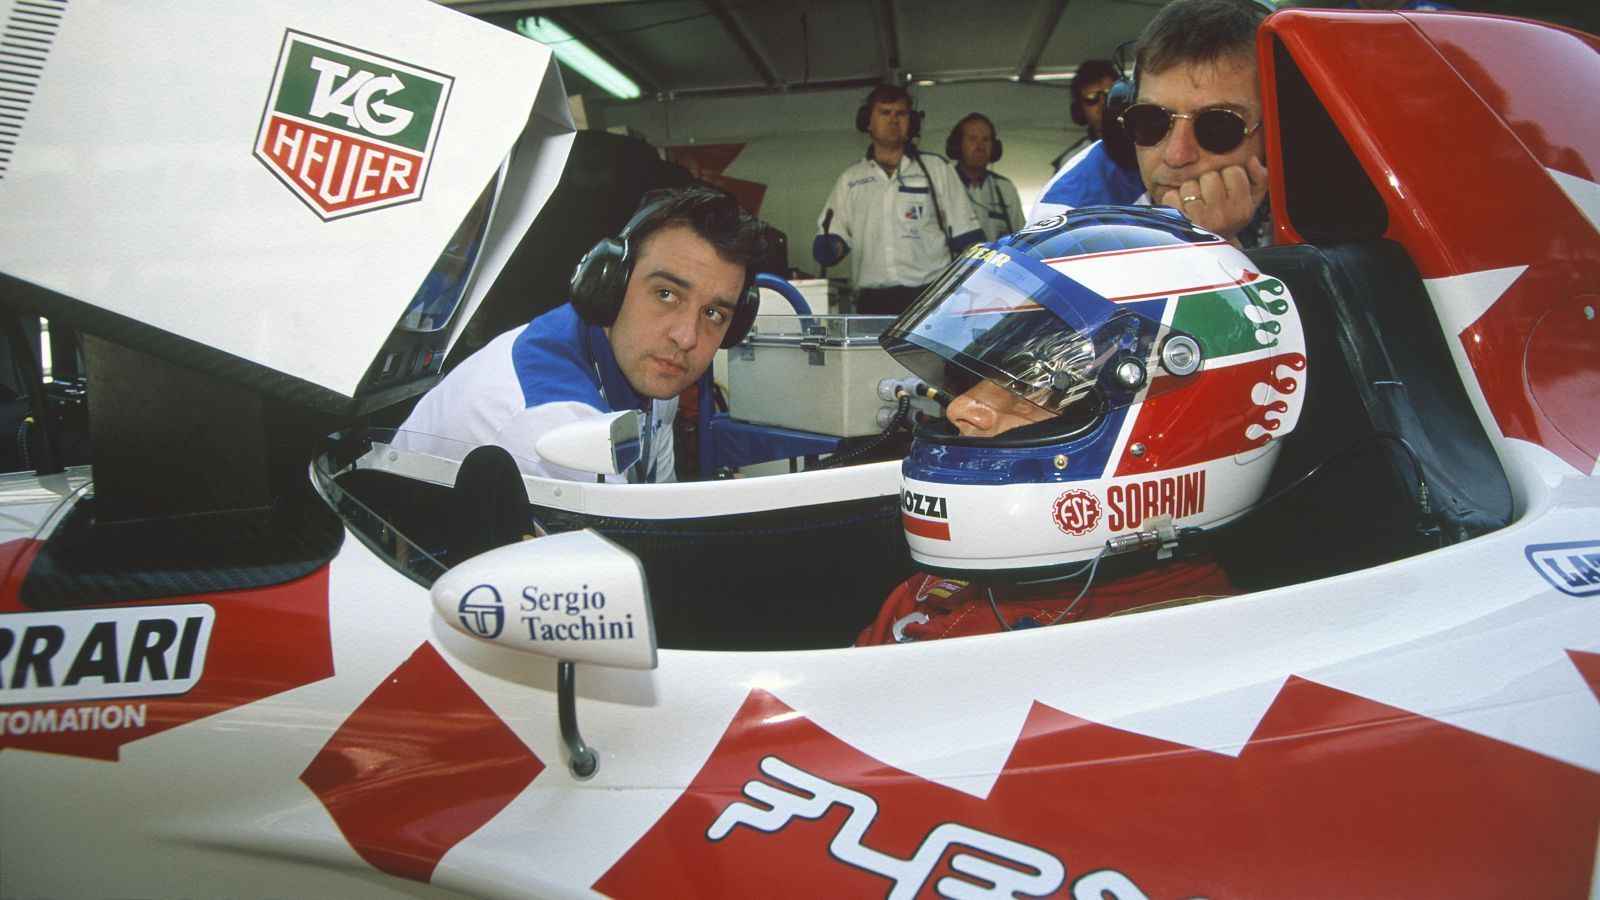 
                <strong>Taki Inoue</strong><br>
                Er selbst erklärte sich zu "einem der schlechtesten Formel-1-Piloten aller Zeiten". Doch der Japaner hatte ordentlich Sponsorengeld in der Hinterhand, so dass er sich ein Cockpit kaufen konnte. Im Ziel kam er 1994/95 fast nie an, und das nicht nur weil er zu langsam war, sondern meistens auch noch entgegen der Fahrrichtung stand. Kurios: Nach einem Trainingsunfall in Monaco kollidierte einst das Safety Car mit Inoues Wagen. Da der Japaner nicht mehr angeschnallt war, wurde er verletzt. Zudem sorgte er für Aufsehen, als er beim Ungarn-GP den Streckenposten beim Löschen seines Wagens helfen wollte und daraufhin vom Medical Car angefahren wurde.
              